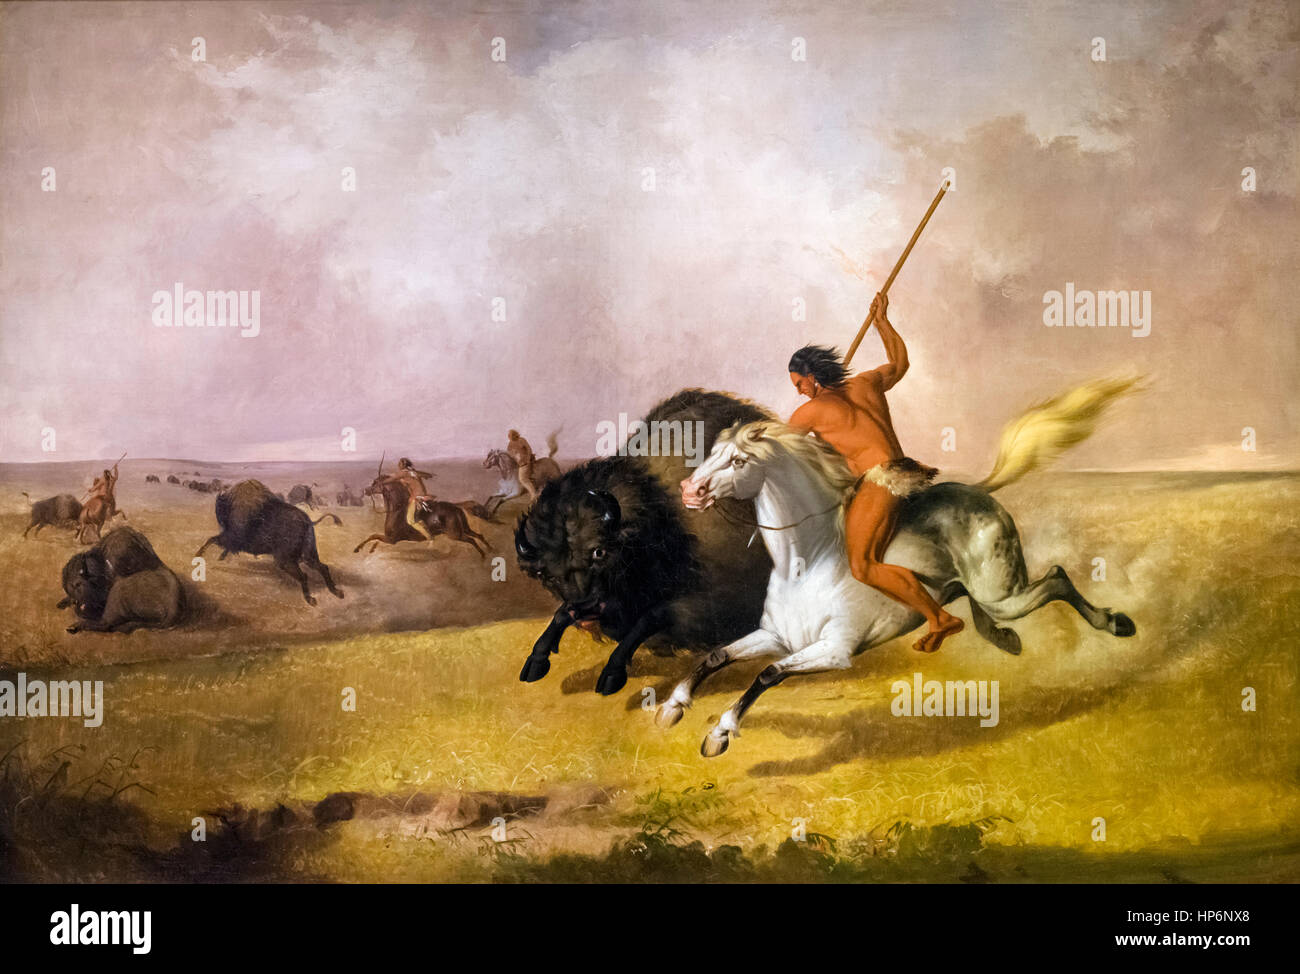 Büffel-Jagd auf den südwestlichen Prärien von John Mix Stanley, Öl auf Leinwand, 1845. Das Gemälde zeigt ein Indianer mutig einen Büffel zu durchbohren. Stockfoto